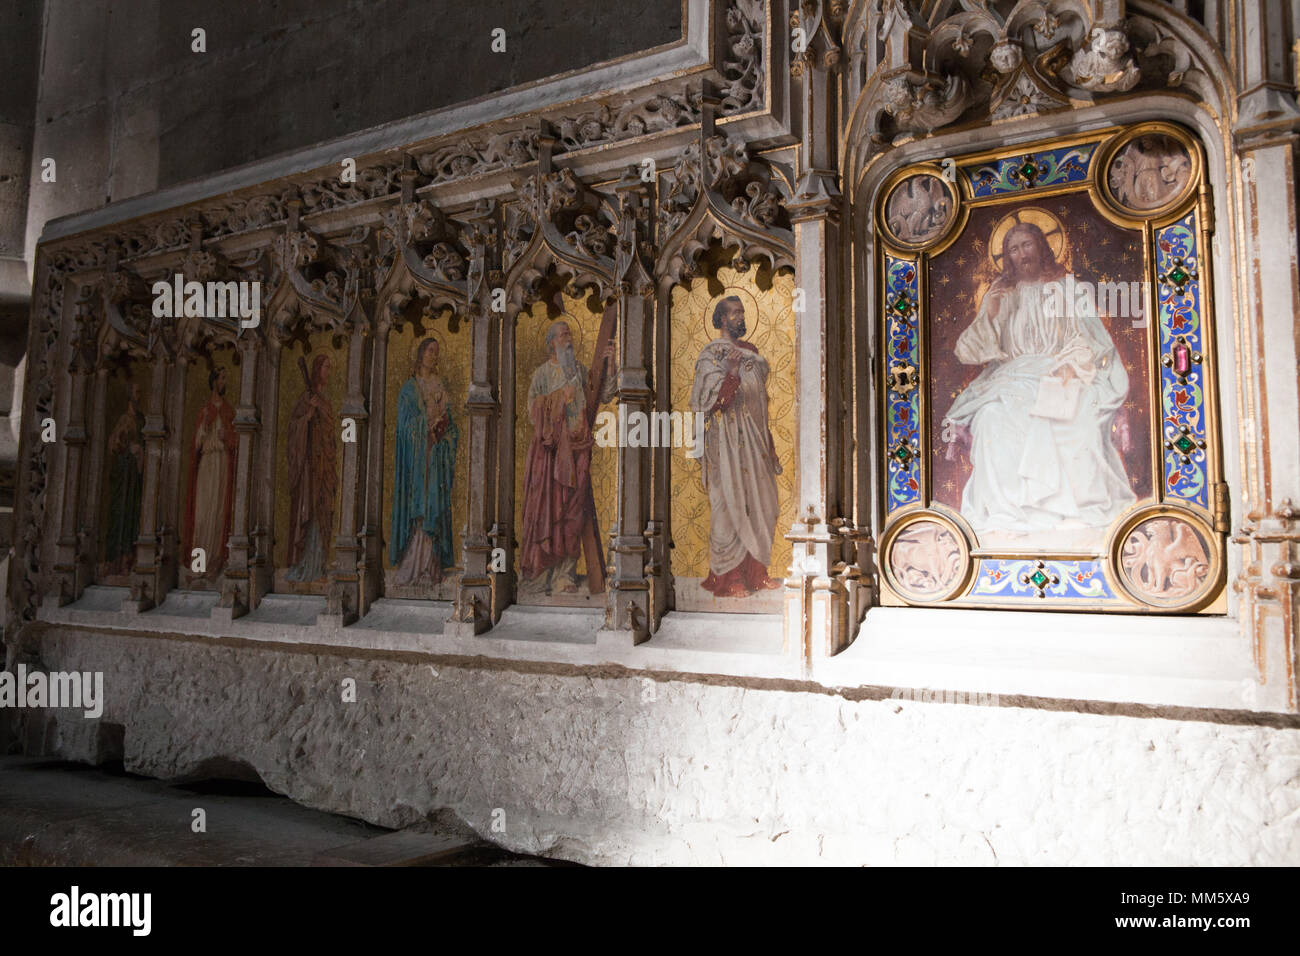 Vue intérieure de l'archidiocèse d'Auch, Gers, France. Également nommée Cathédrale de Sainte-Marie. De style gothique. Banque D'Images